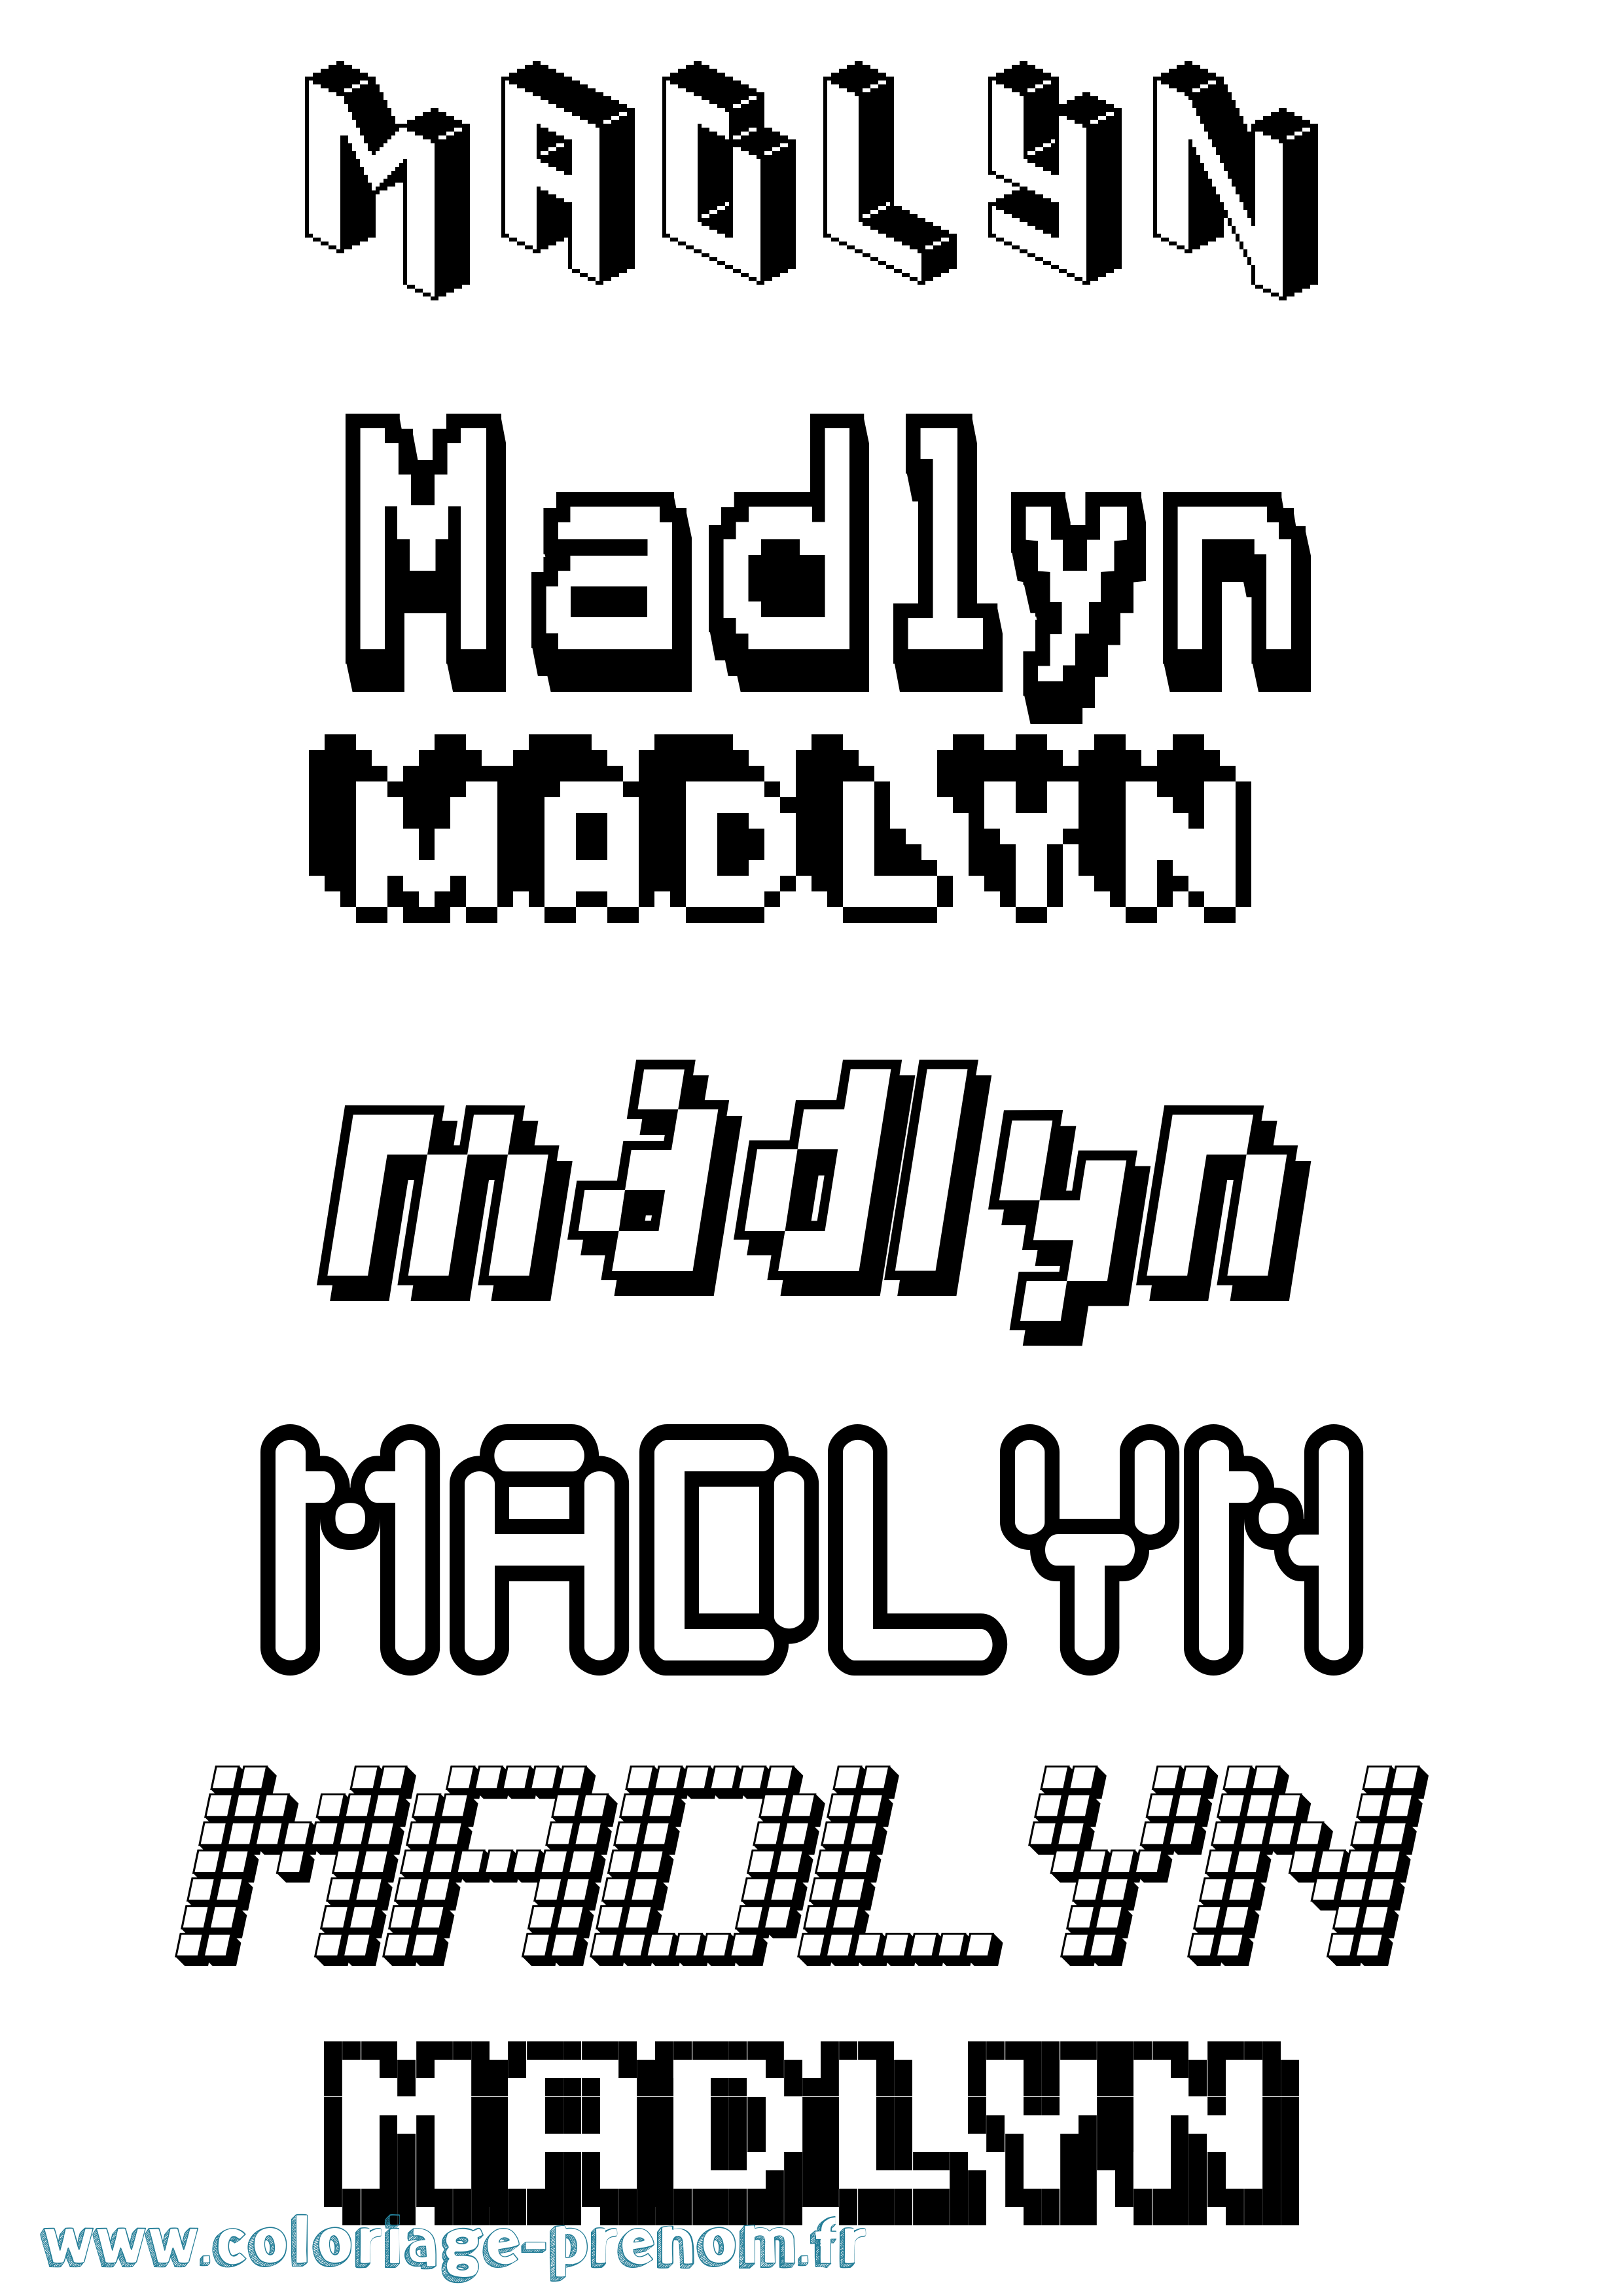 Coloriage prénom Madlyn Pixel